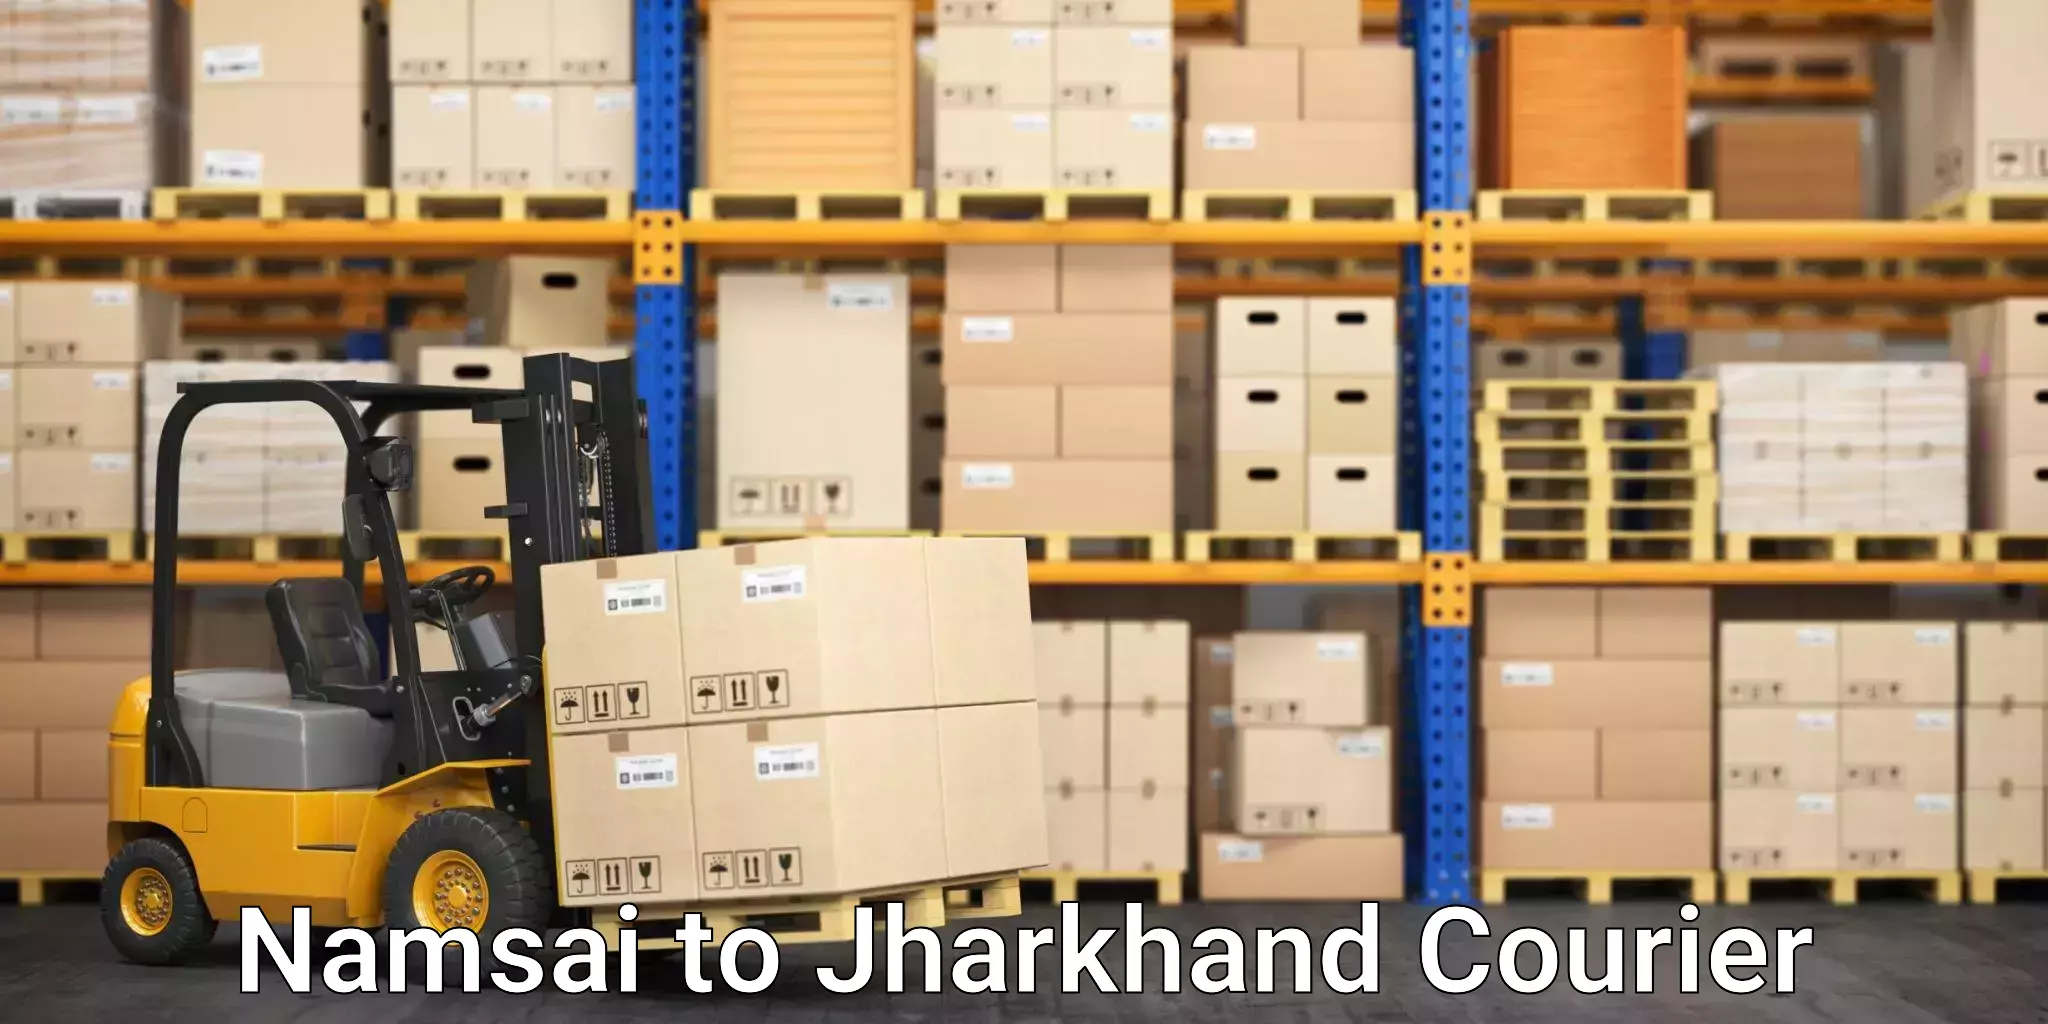 Secure shipping methods Namsai to Jamshedpur